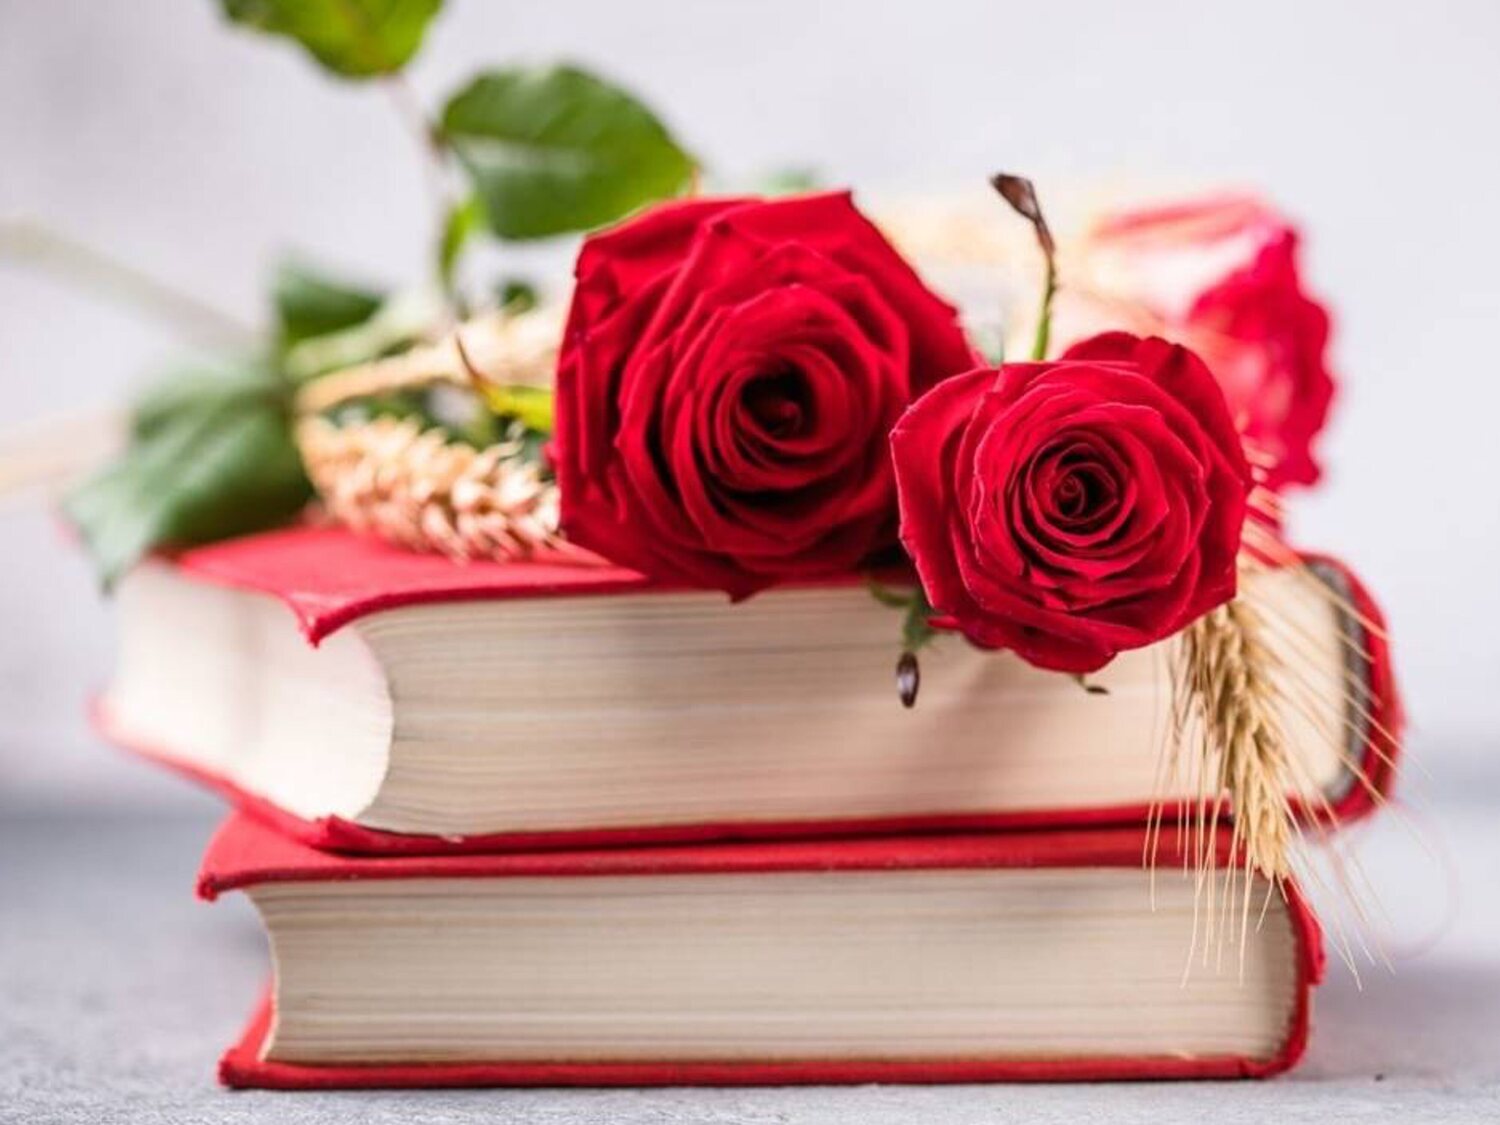 Sant Jordi: ¿Por qué se regala un libro y una rosa?